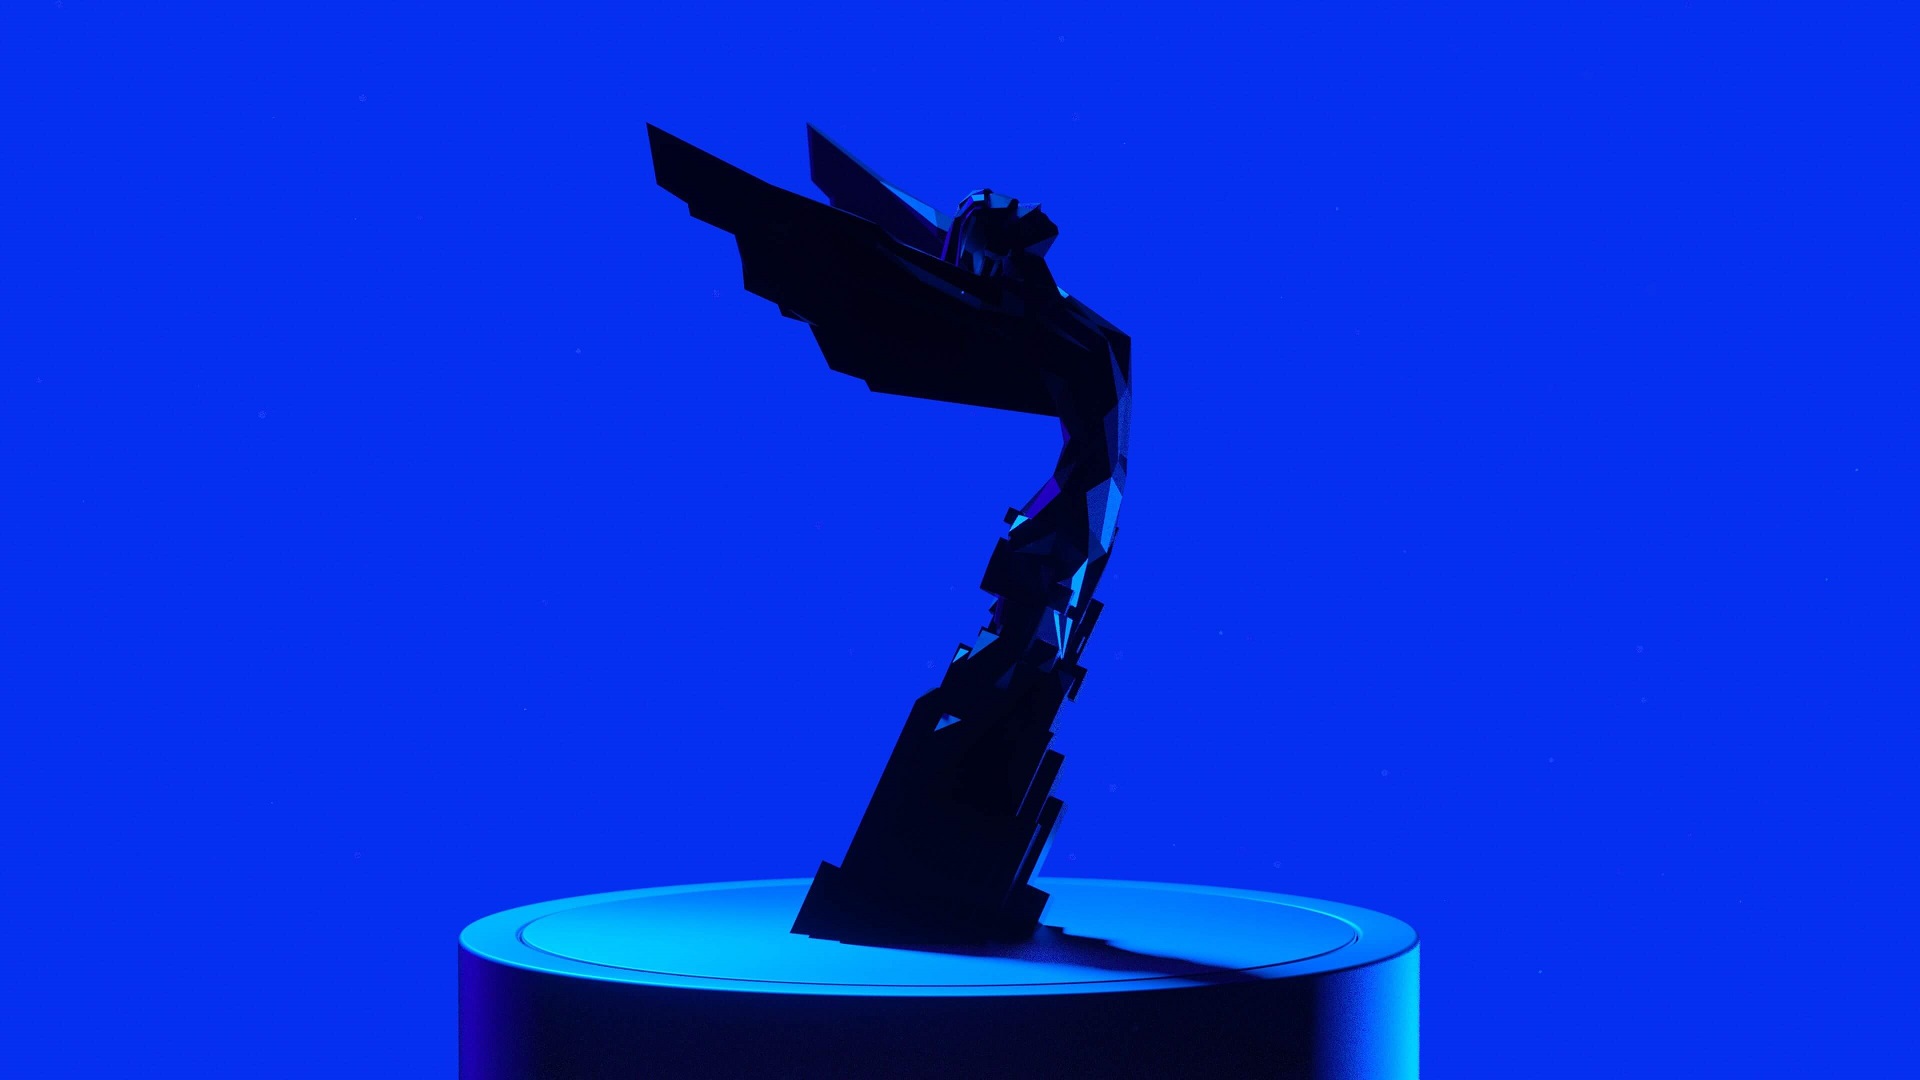 The Game Awards 2023; horarios y Dónde ver la premiación en vivo